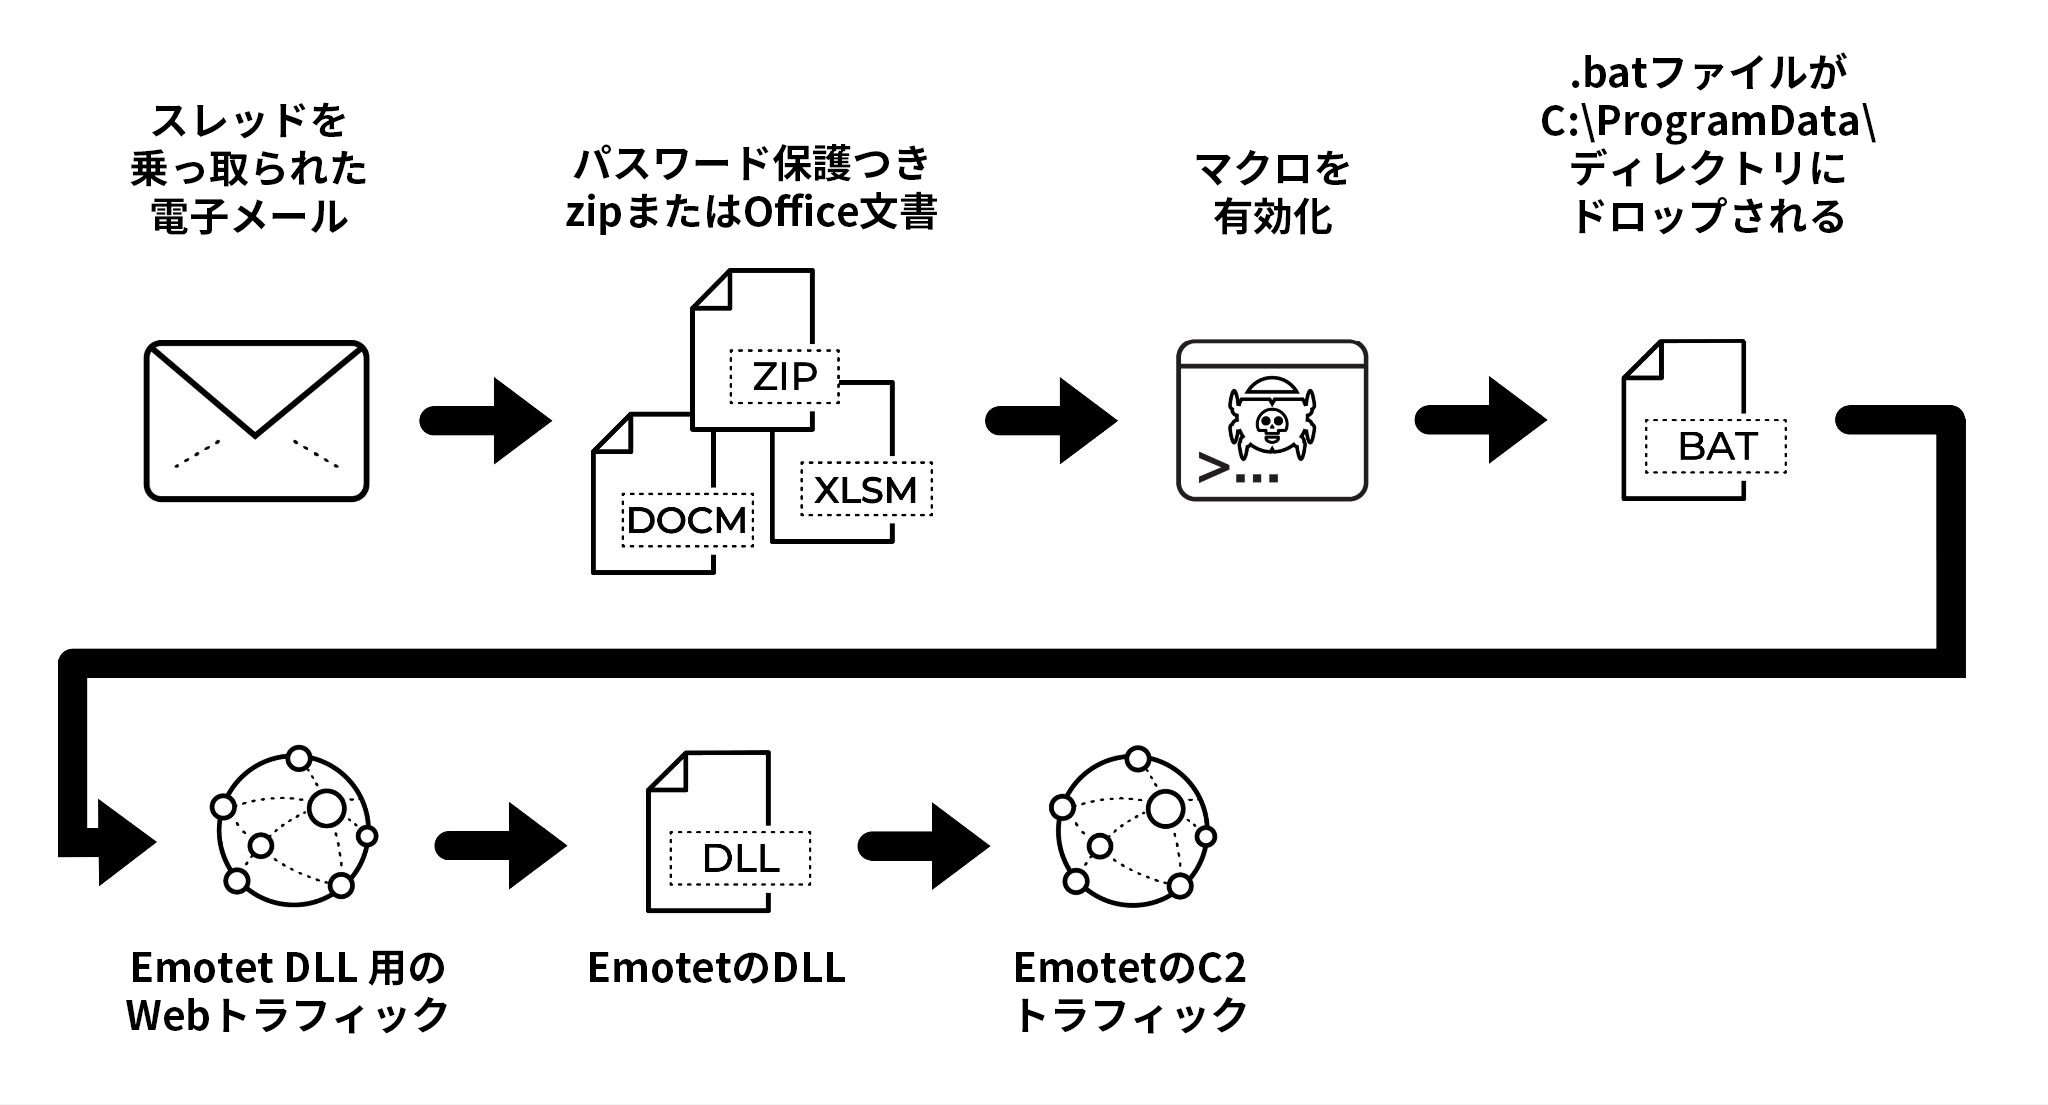 2021年11月23日(月)に観測されたEmotet感染チェーン。脅威によるメールスレッドのハイジャック、パスワード保護つきZIPまたはOffice文書、マクロの有効化、バッチファイルをC:\ProgramData\directoryにドロップ、Emotet DLL用のWebトラフィック、Emotet DLL、Emotet C2トラフィック